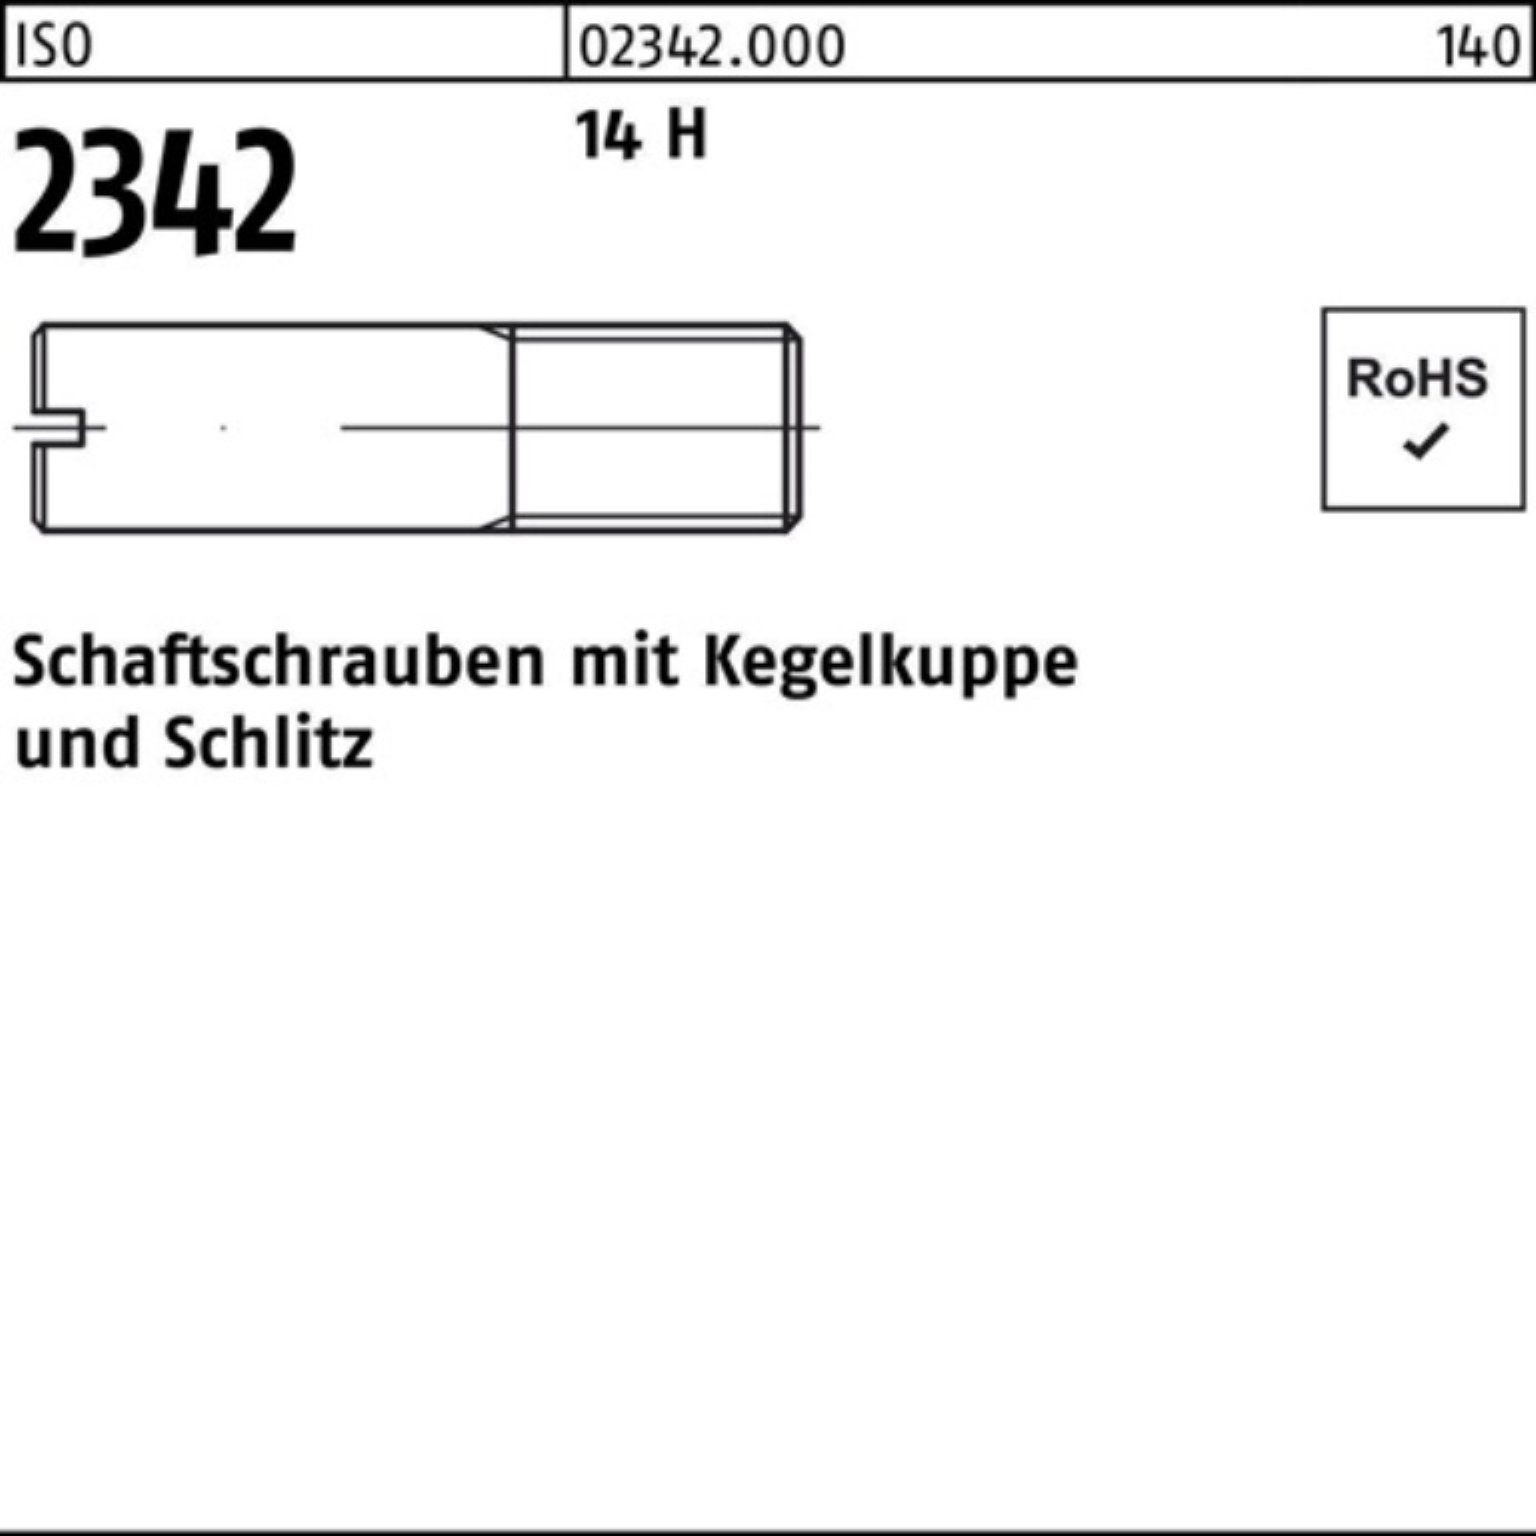 Reyher Schraube 100er Pack Schaftschraube ISO 2342 Kegelkuppe/Schlitz M6x 30 14 H 100